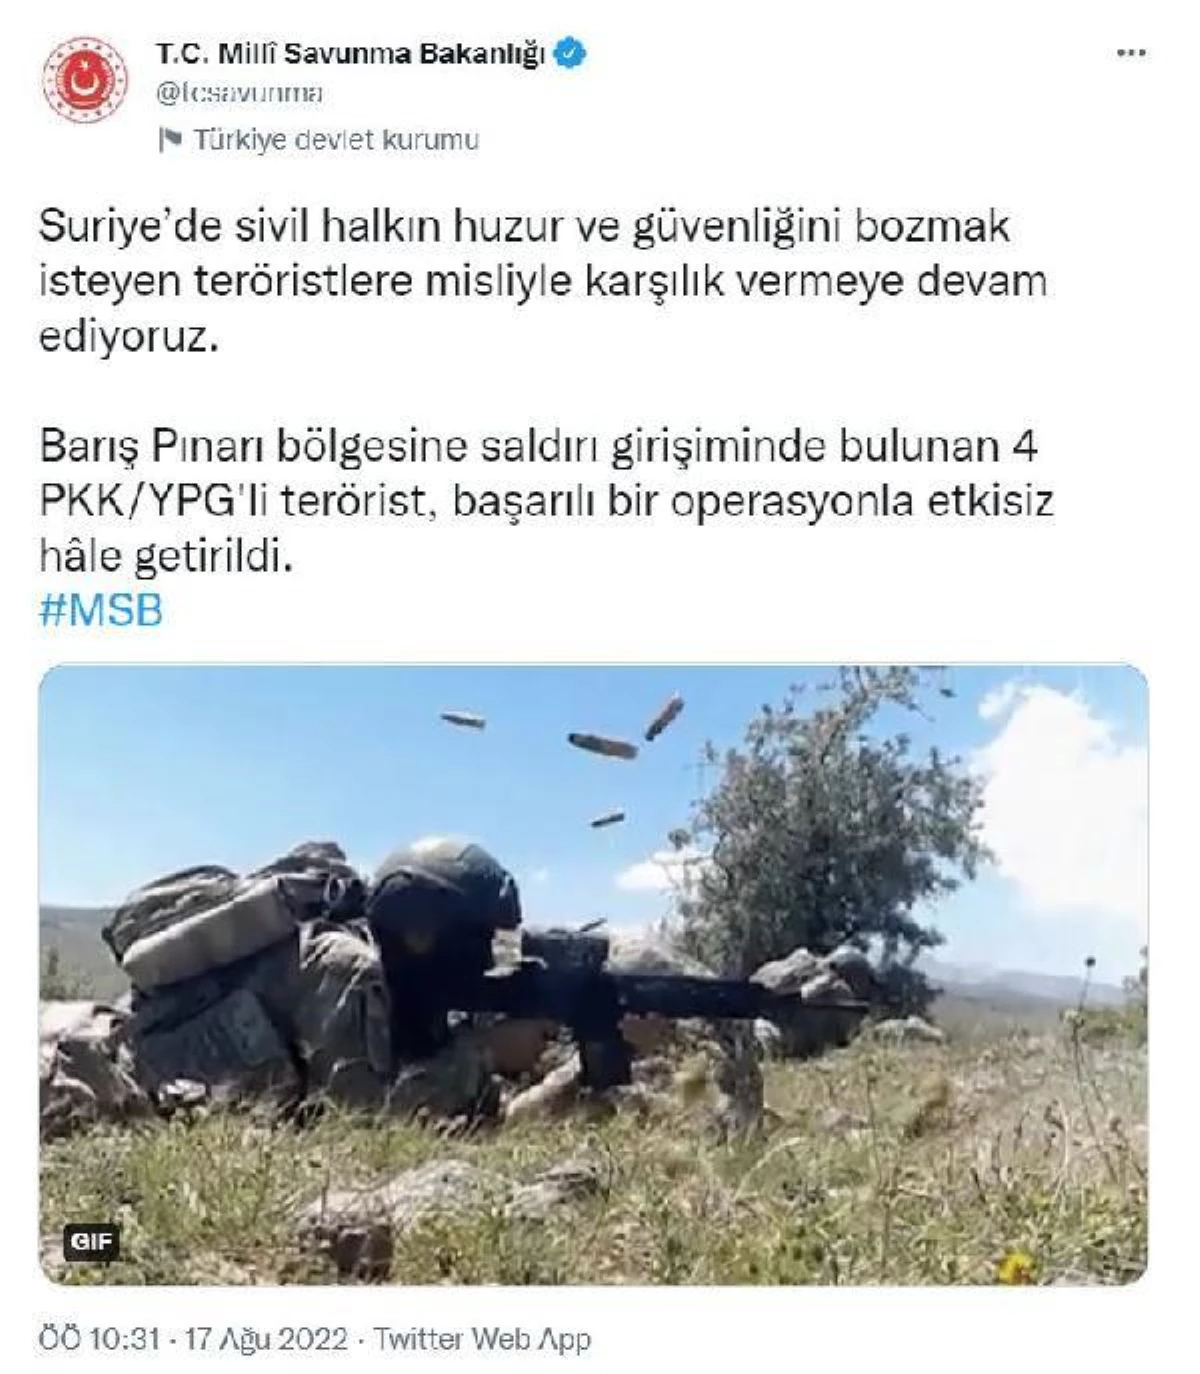 MSB: "Barış Pınarı bölgesine saldırı girişiminde bulunan 4 PKK/YPG\'li terörist başarılı bir operasyonla etkisiz hale getirildi."